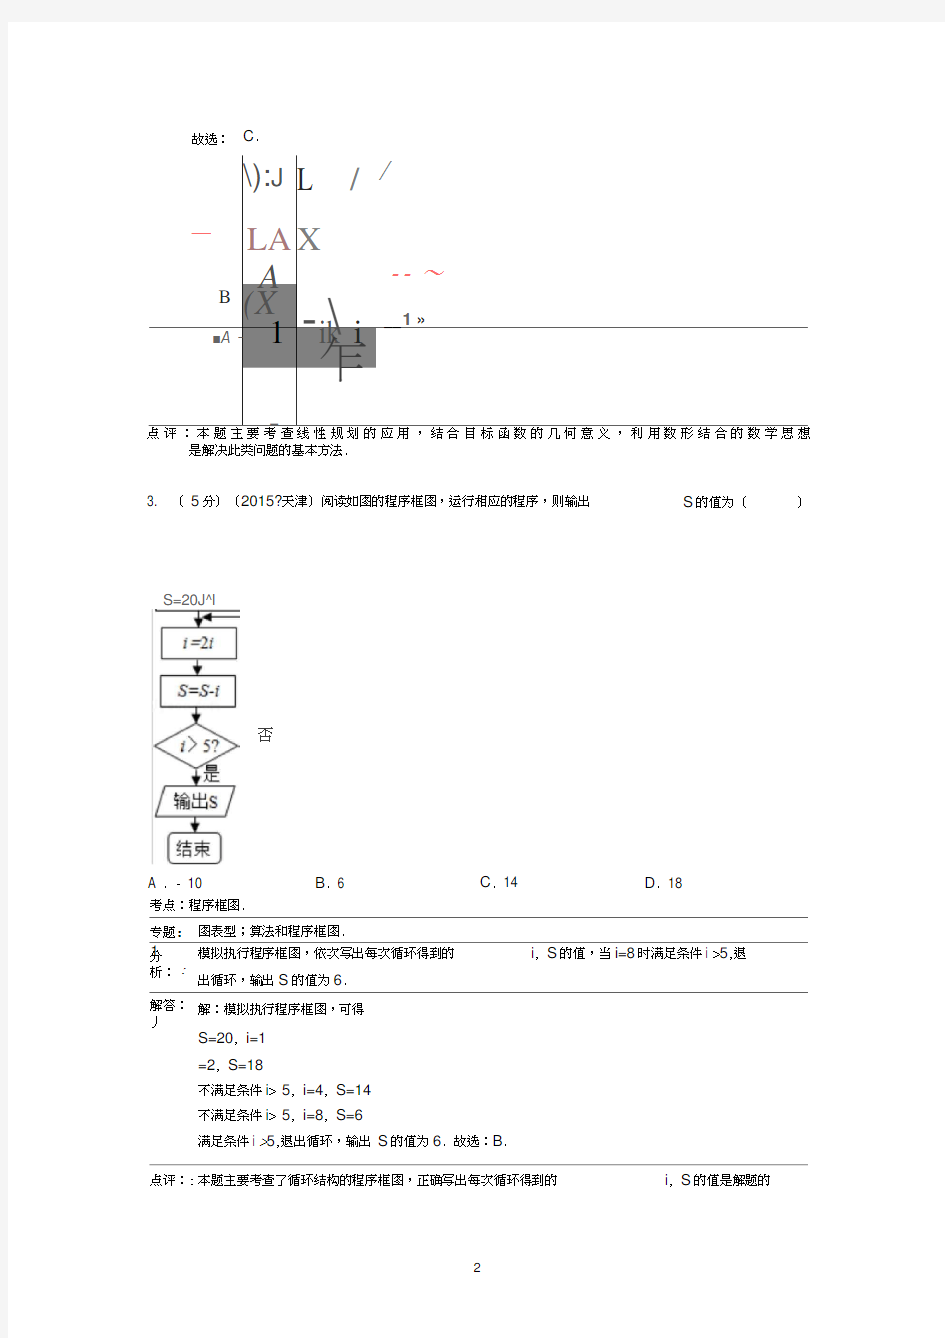 2015年天津市高考数学试卷(理科)答案与解析